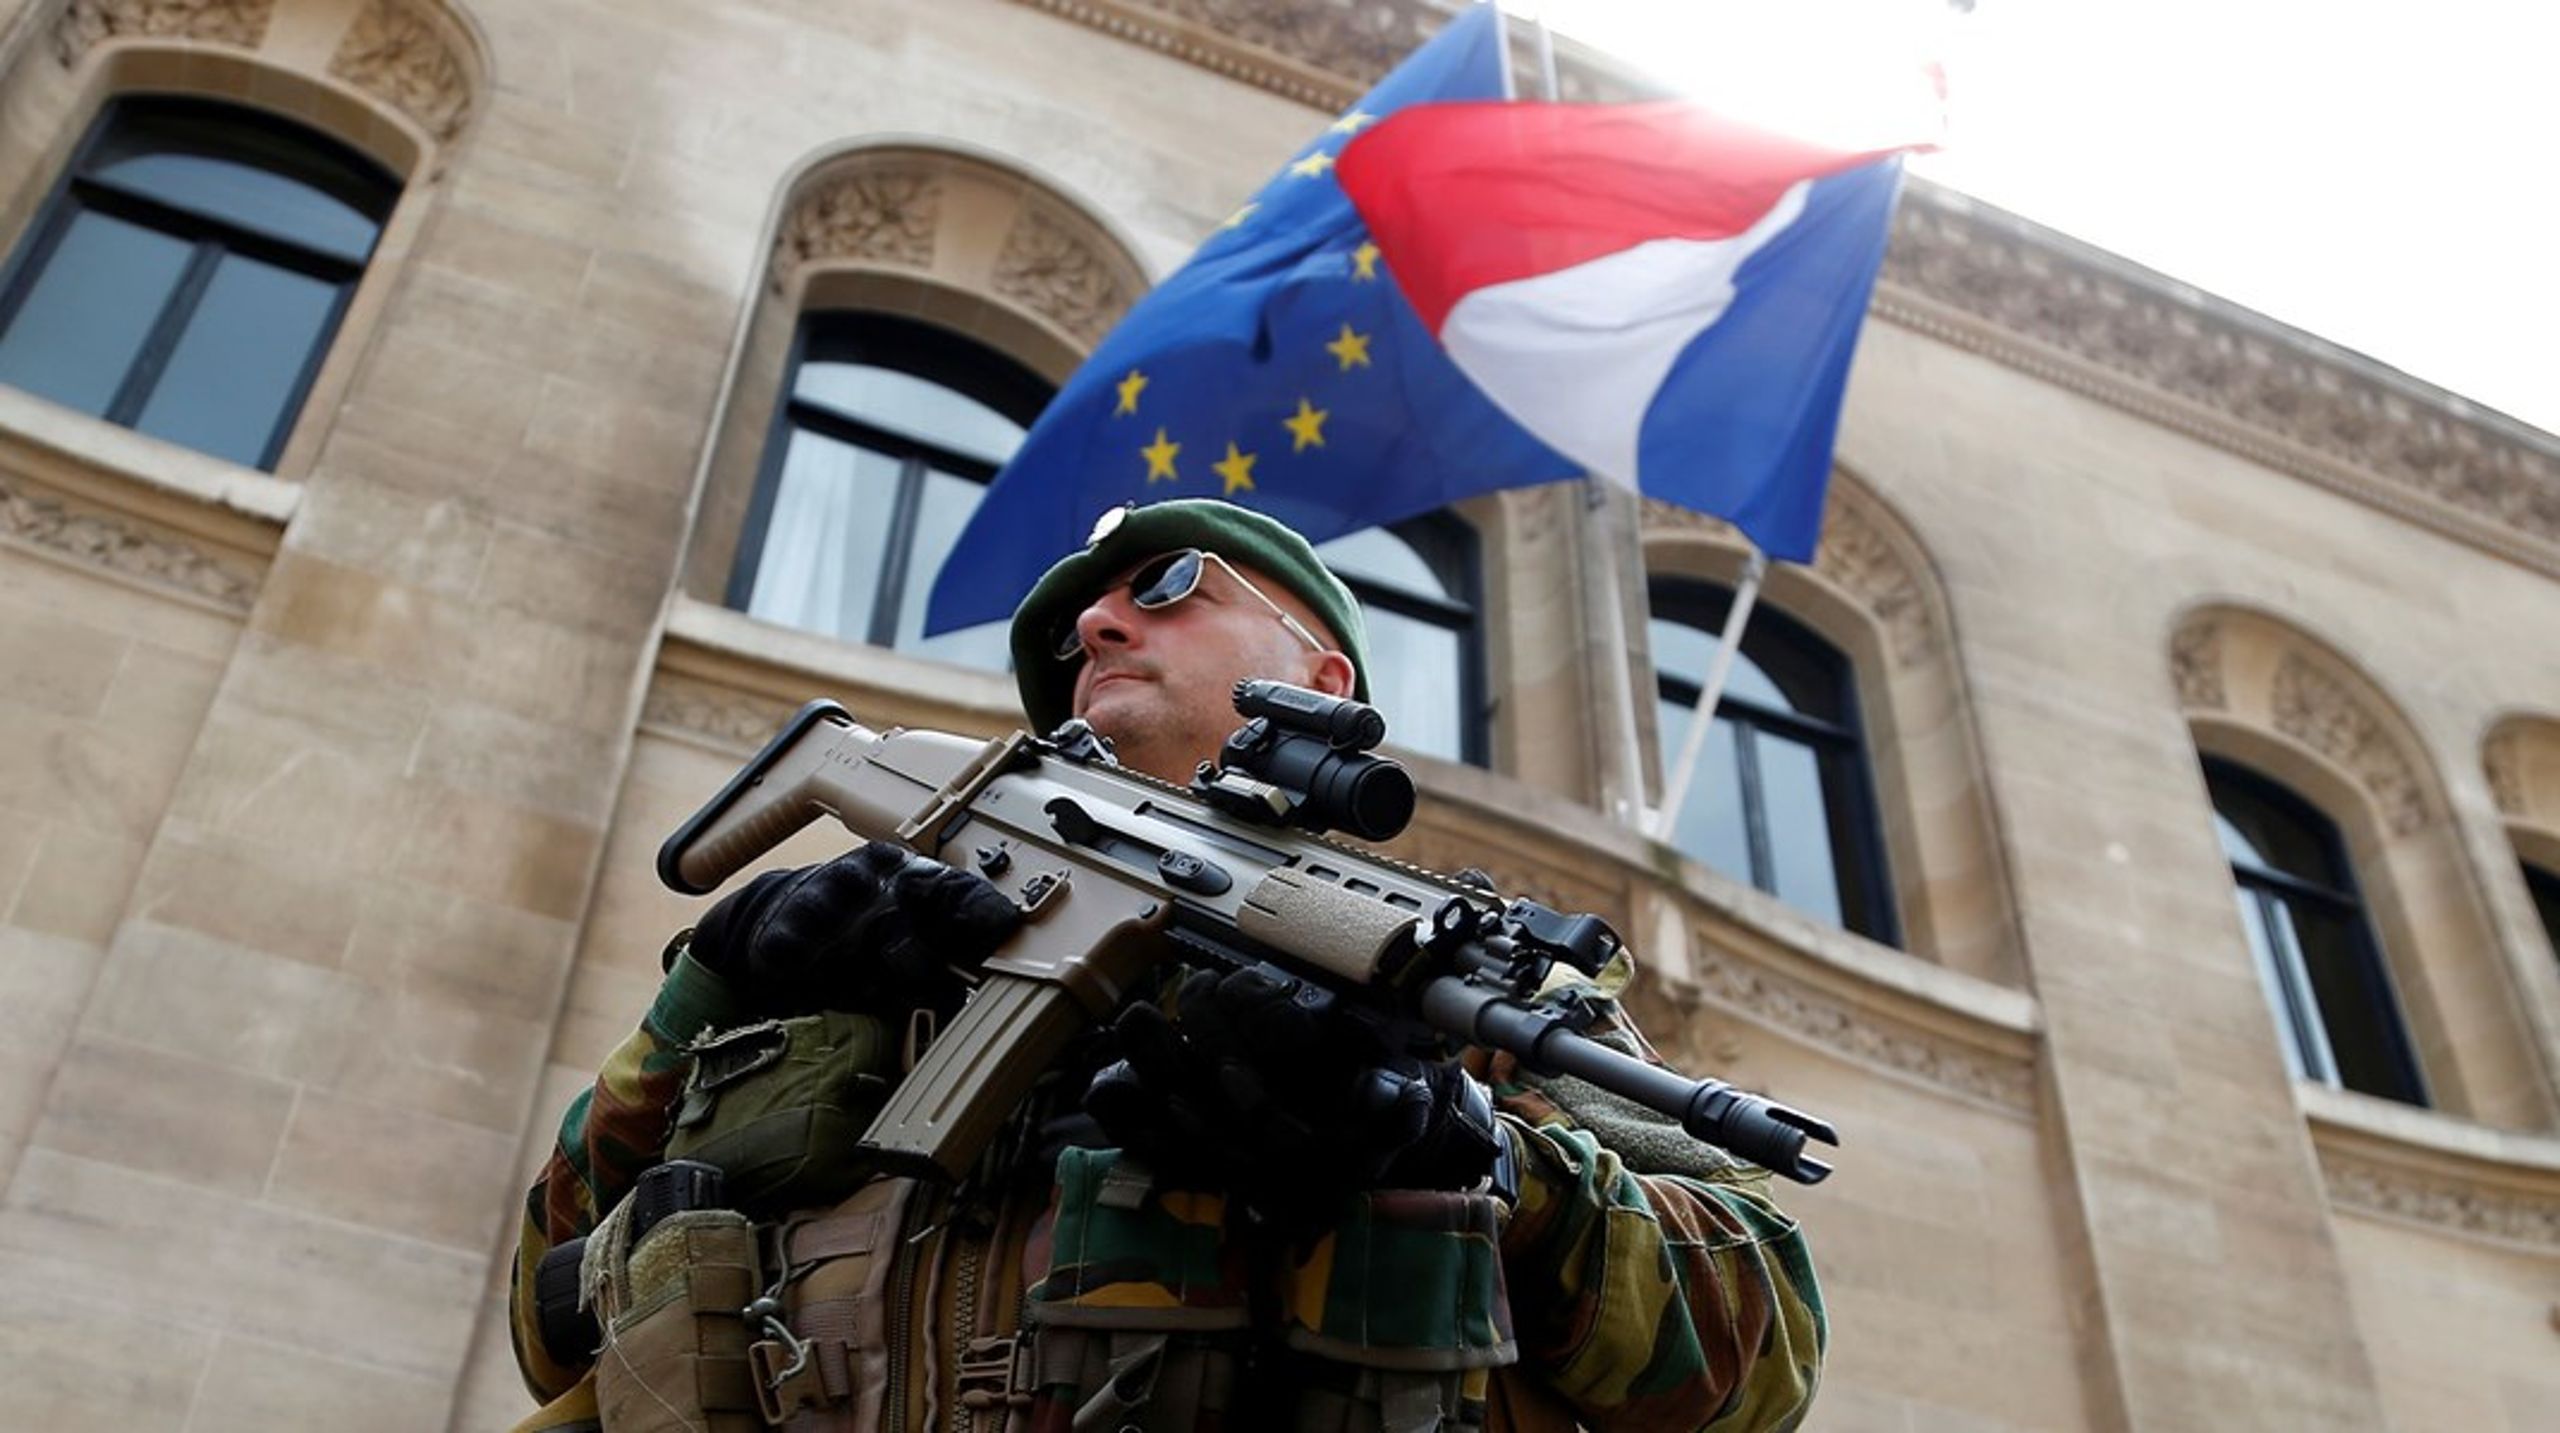 Særligt Frankrig har store forsvarsambitioner på EU's vegne.